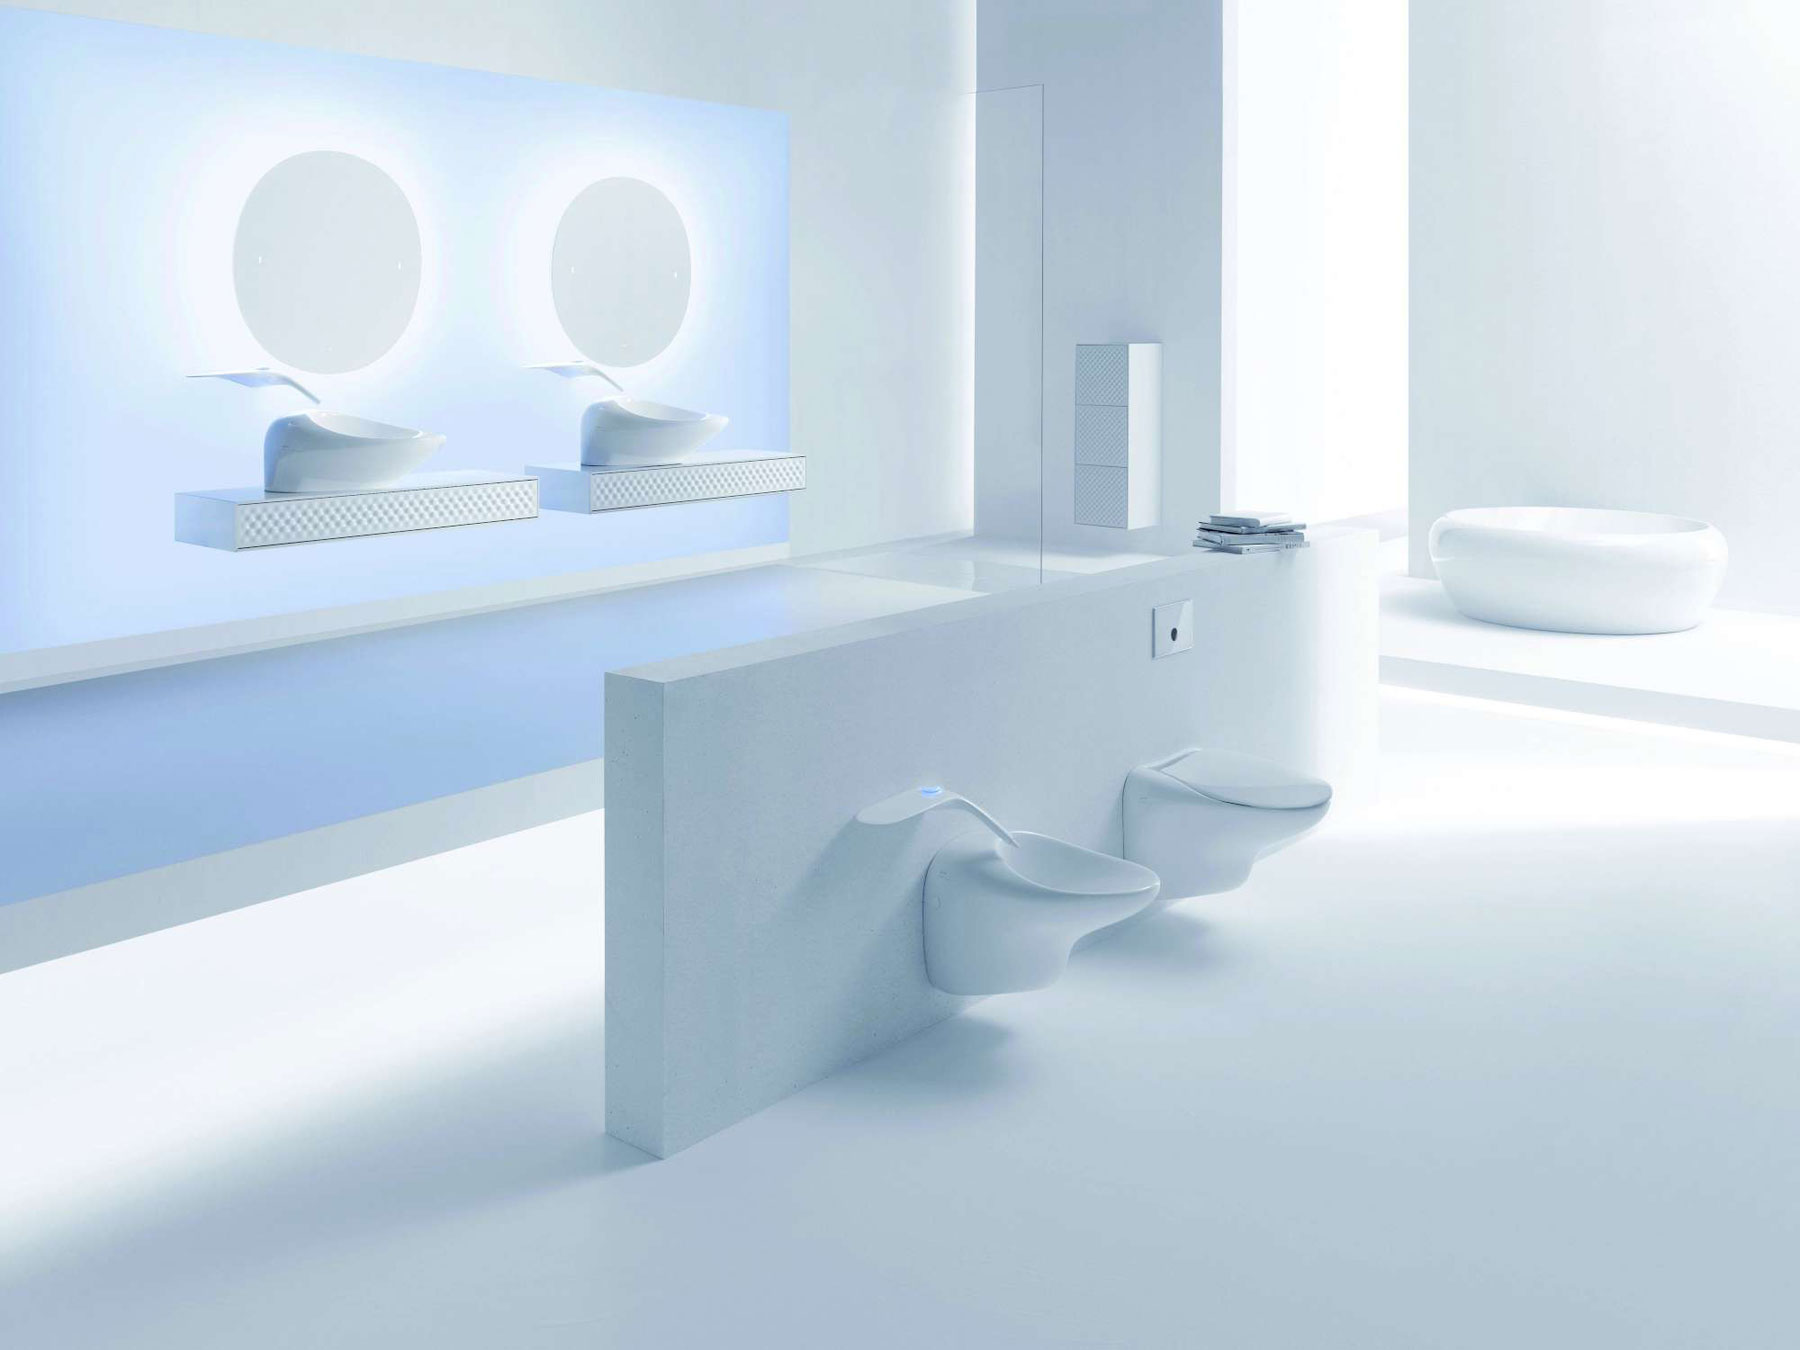 Koupelnová řada Freedom od světoznámého designera Ross Lovegrove. Svým ztvárněním překonává veškeré konvence a nabízí naprosto ojedinělé tvary sanitární keramiky, nábytku a baterií.